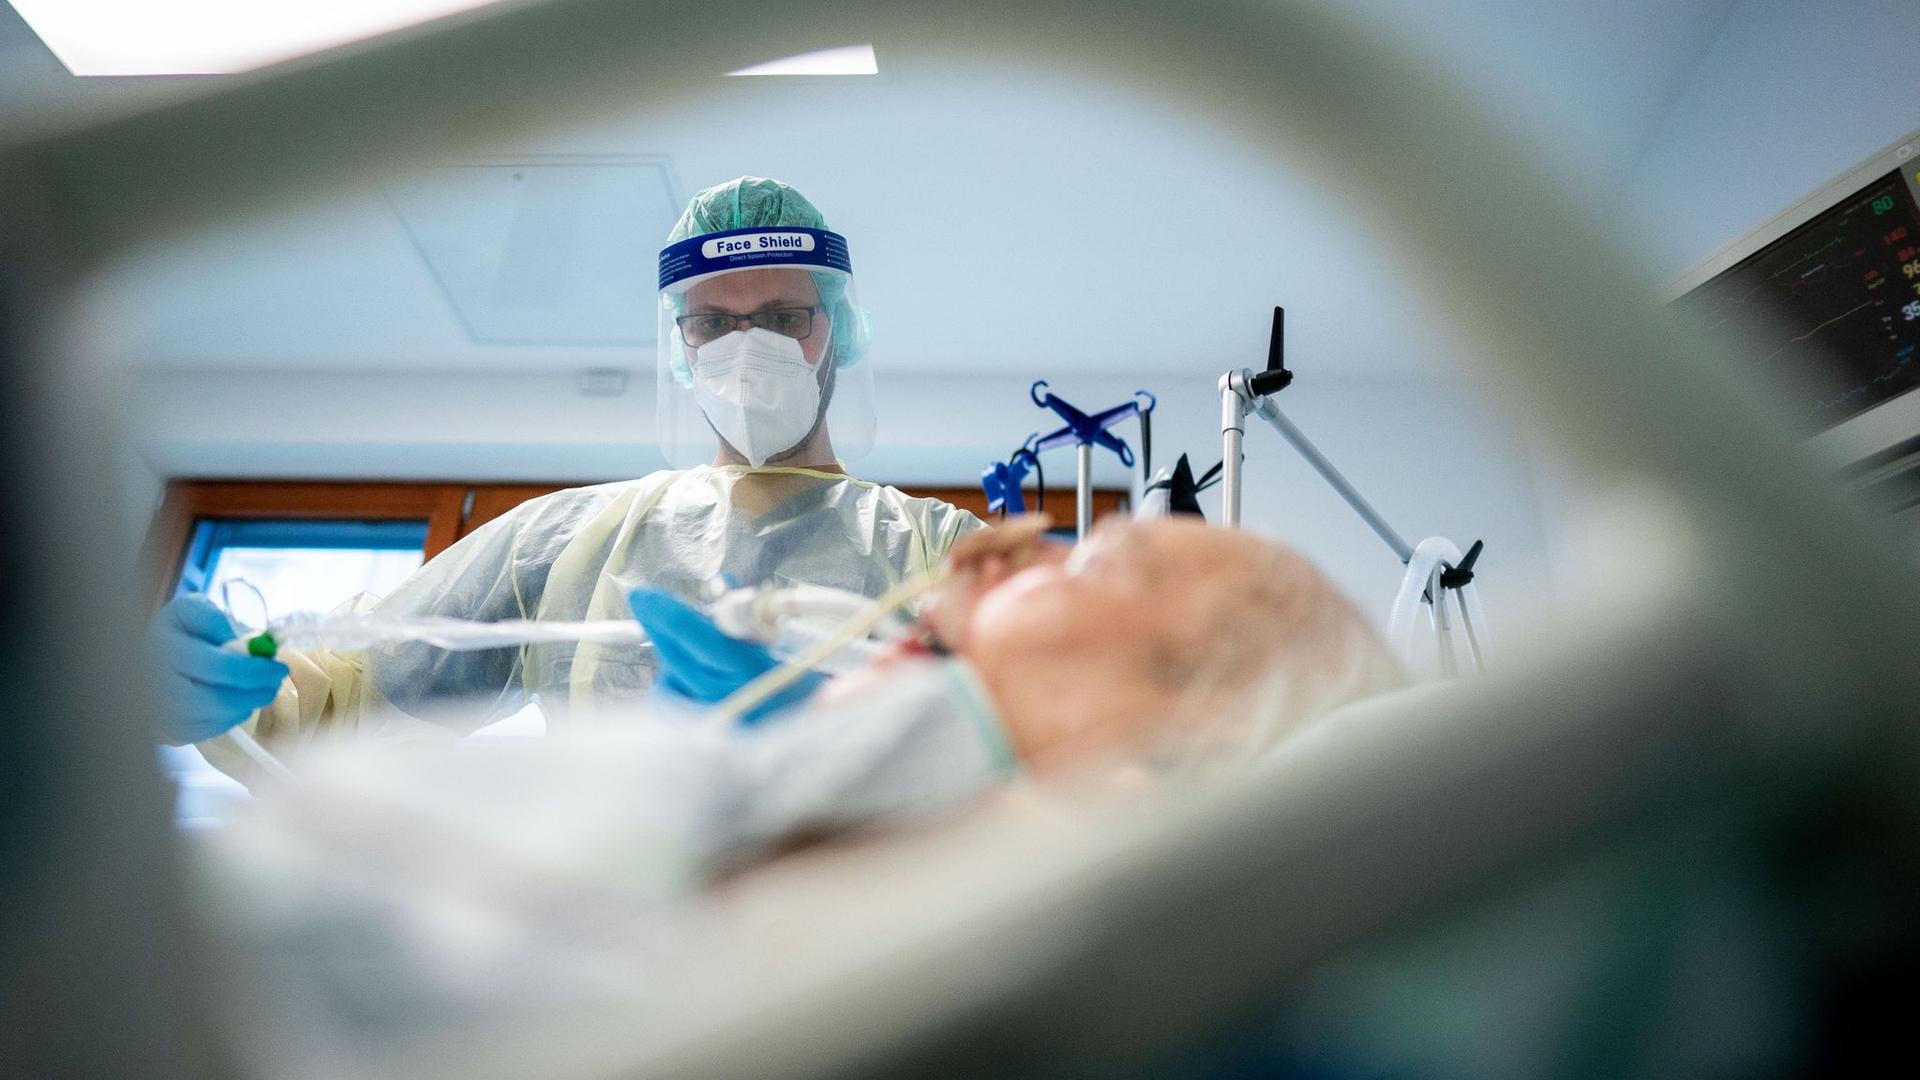 Zerreißprobe: Ein Pfleger versorgt in Schutzausrüstung auf der Intensivstation einen Corona-Patienten. Die neue Welle trifft das nach einem Pandemie-Jahr erschöpfte Klinikpersonal.